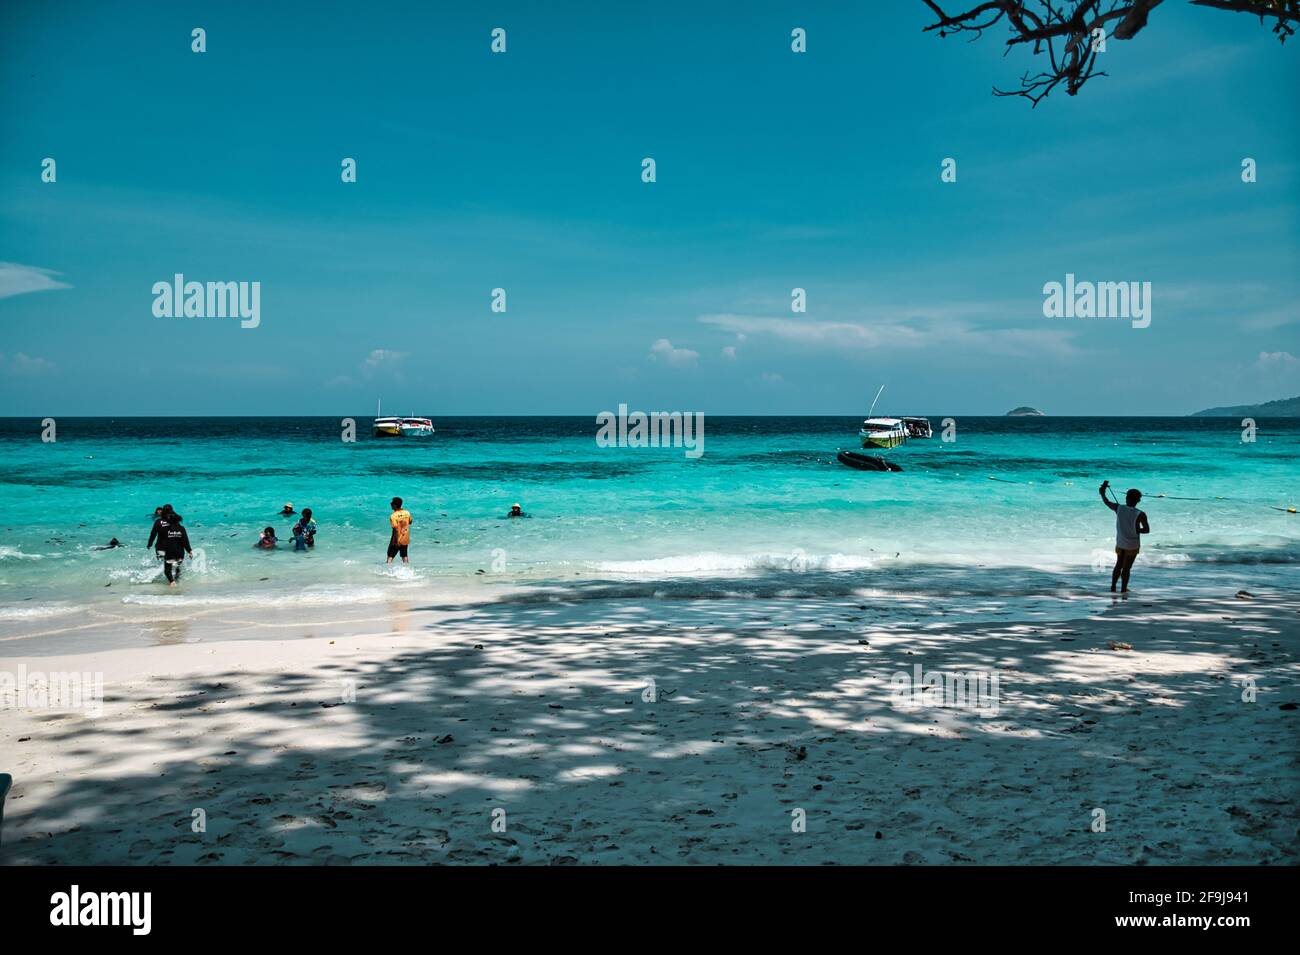 Îles Similan, Khaolak, Phang-Nga, Thaïlande 18 avril 2021 étourdissement, Vue panoramique sur les eaux turquoise de la mer d'Andaman aux îles Similan Banque D'Images